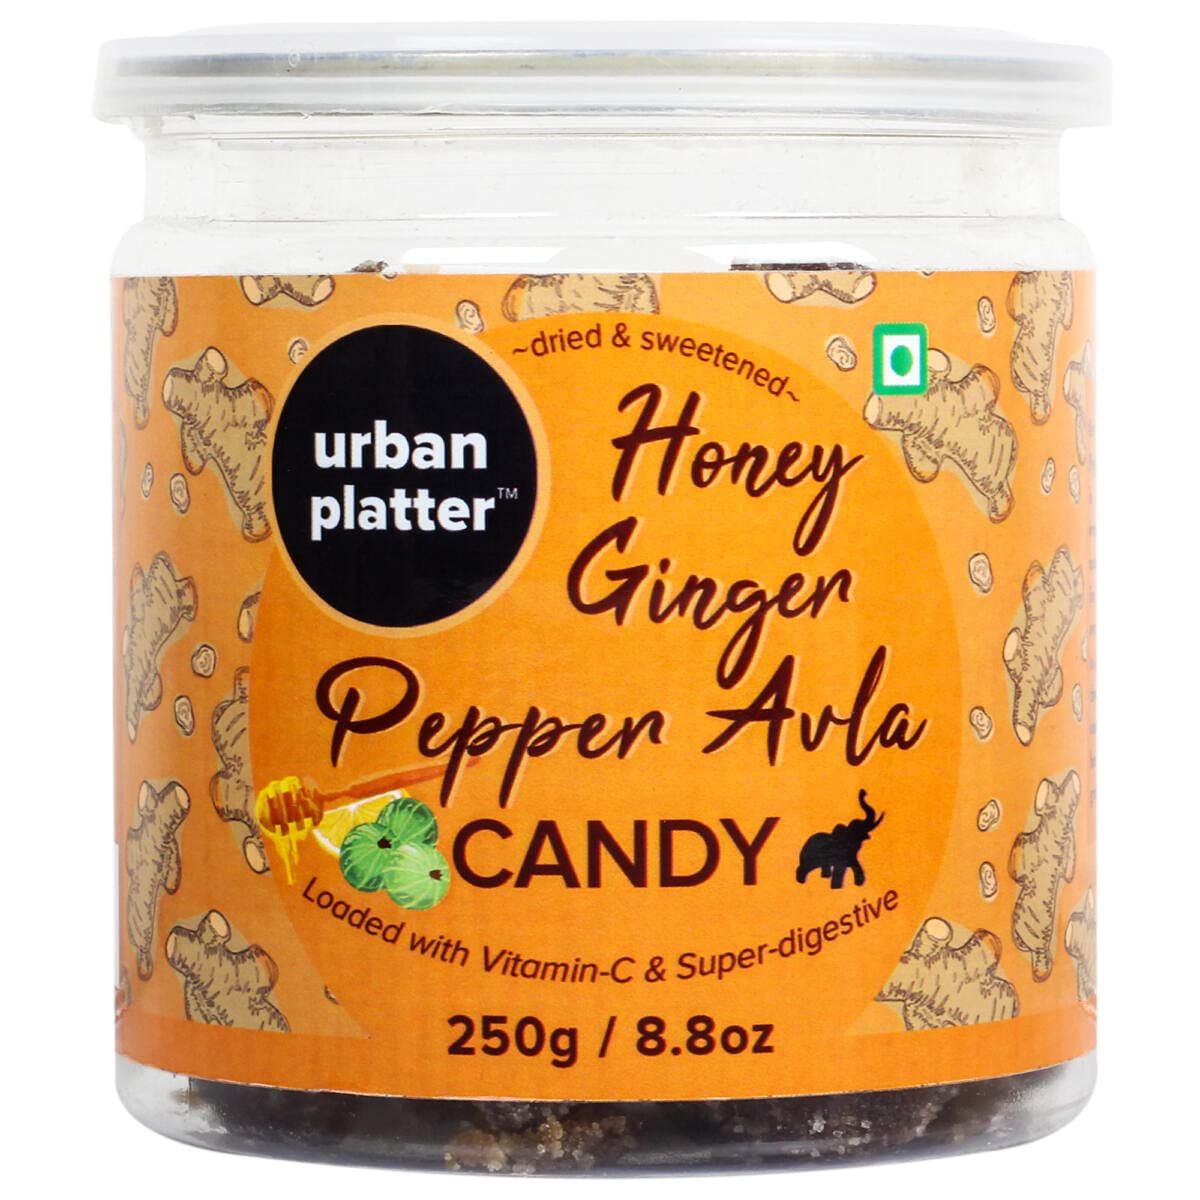 Urban Platter Honey Ginger Pepper Avla Candy Image